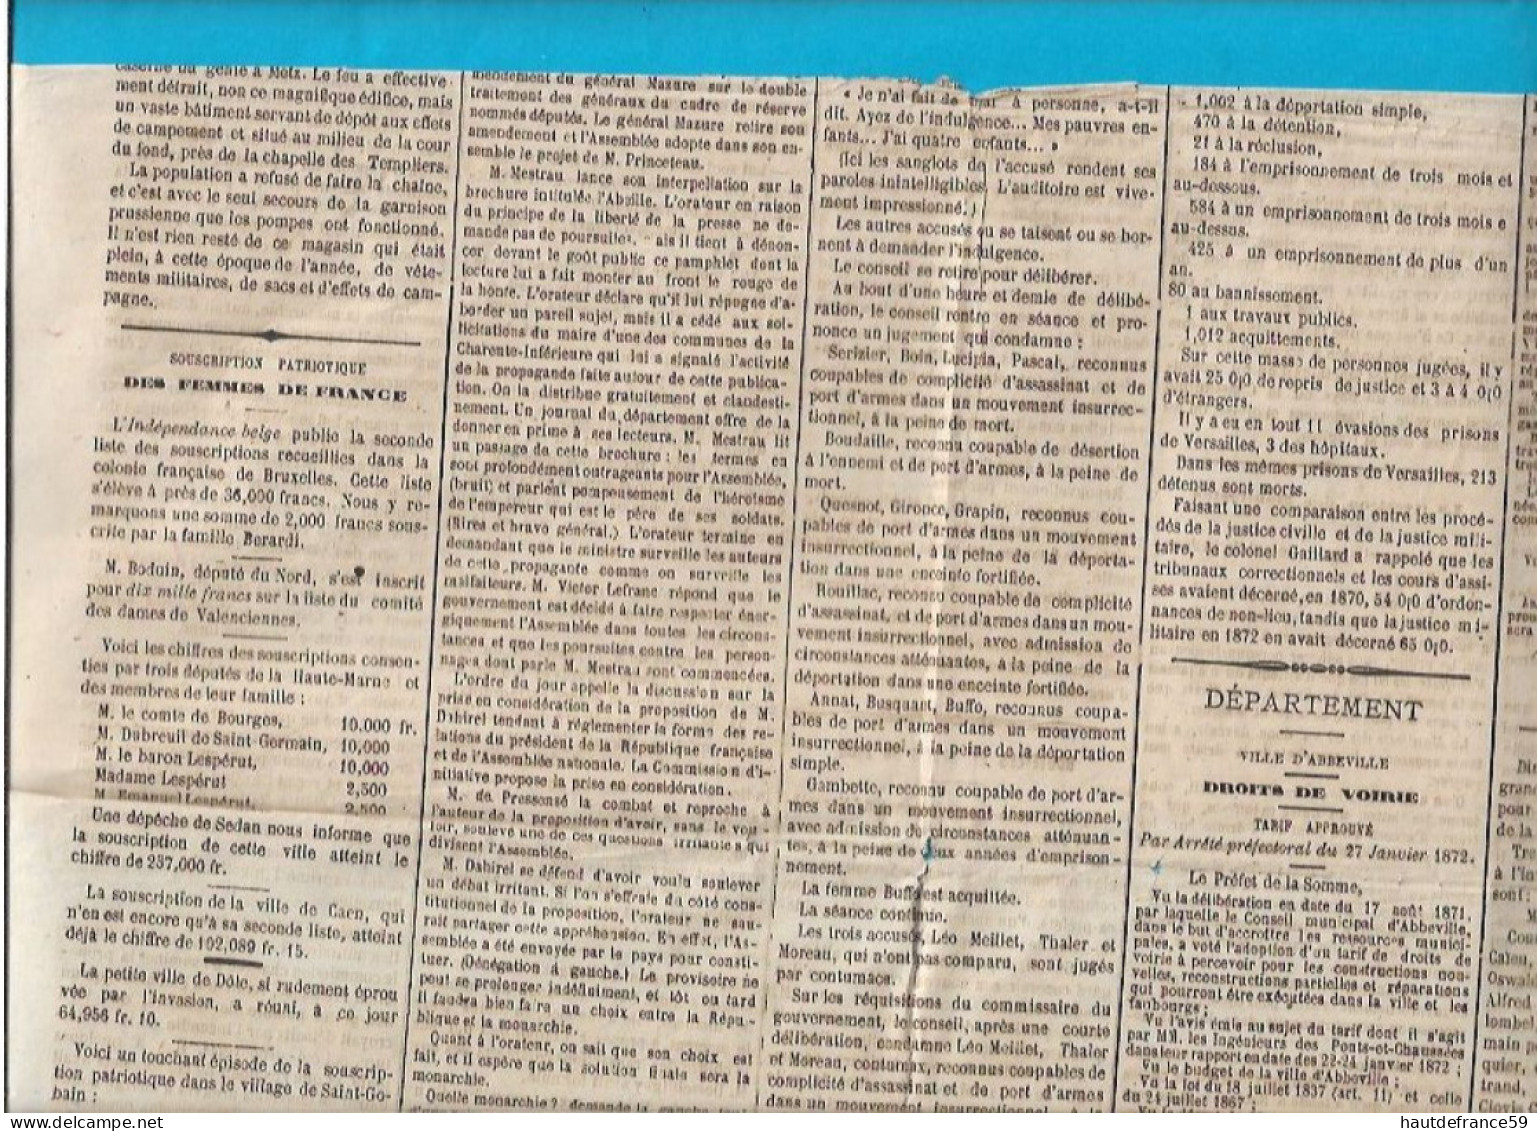 L ABBEVILLOIS Journal Politique Commercial Agricole Littéraire De L Arrondissement D ABBEVILE Février 1972 Guerre Grévy - 1800 - 1849